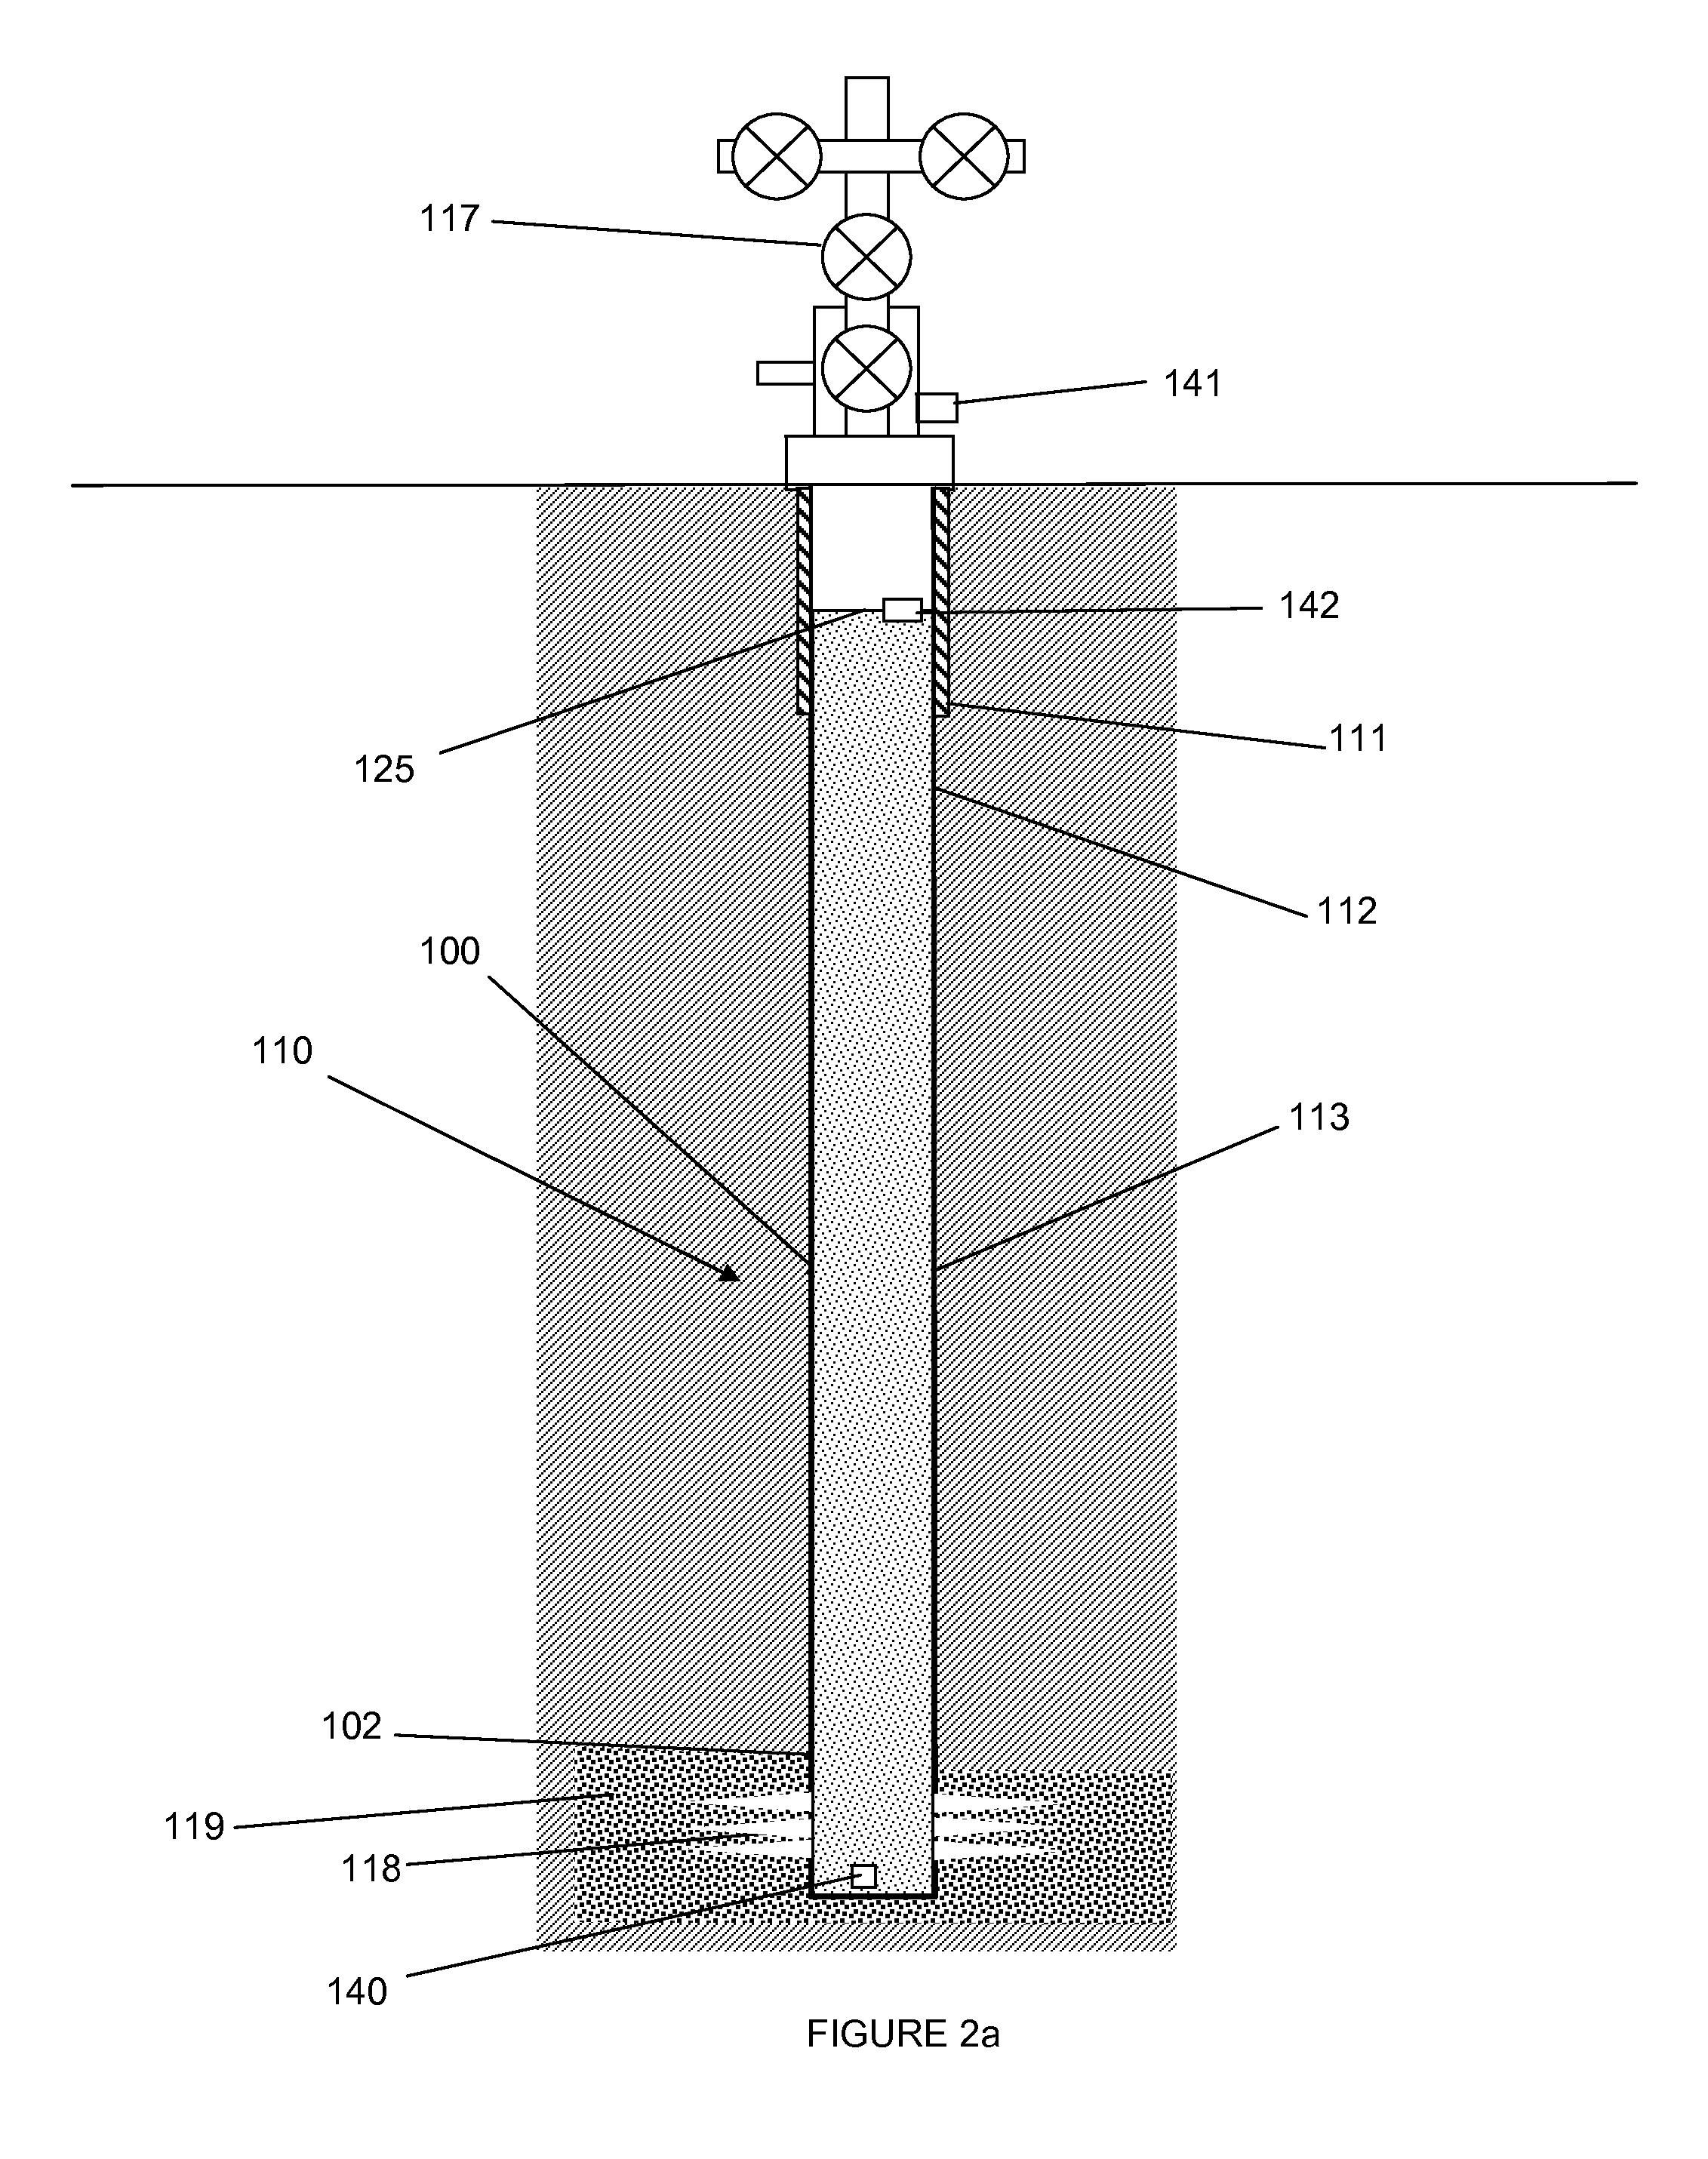 Method of determining reservoir pressure